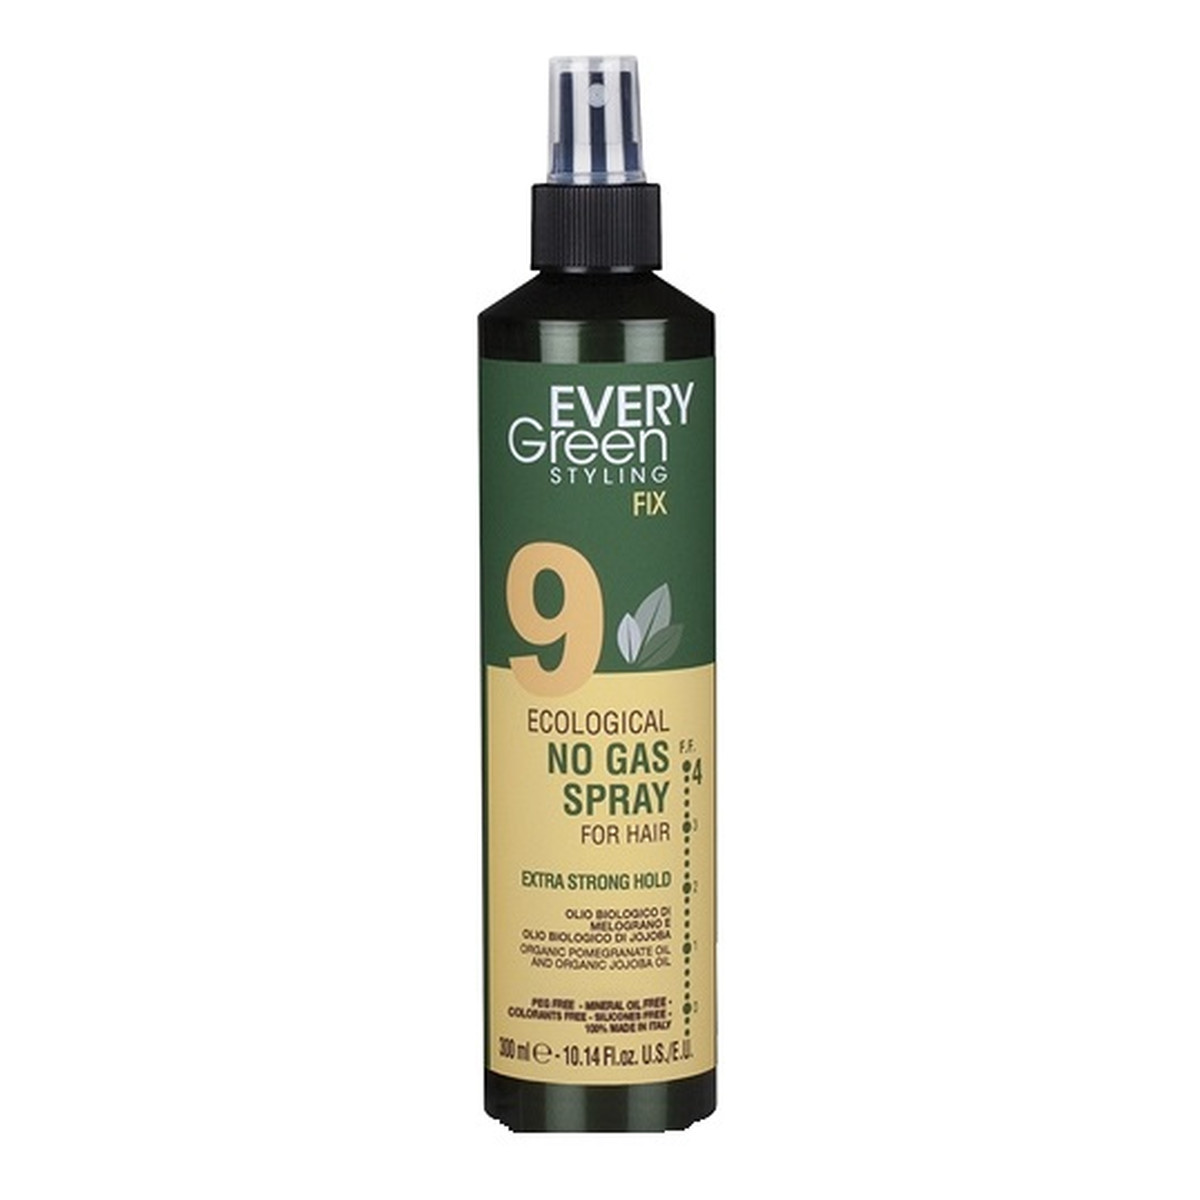 Every Green 9 eco hairspray no gas strong hold ekologiczny lakier do włosów mocno utrwalający fryzurę 300ml